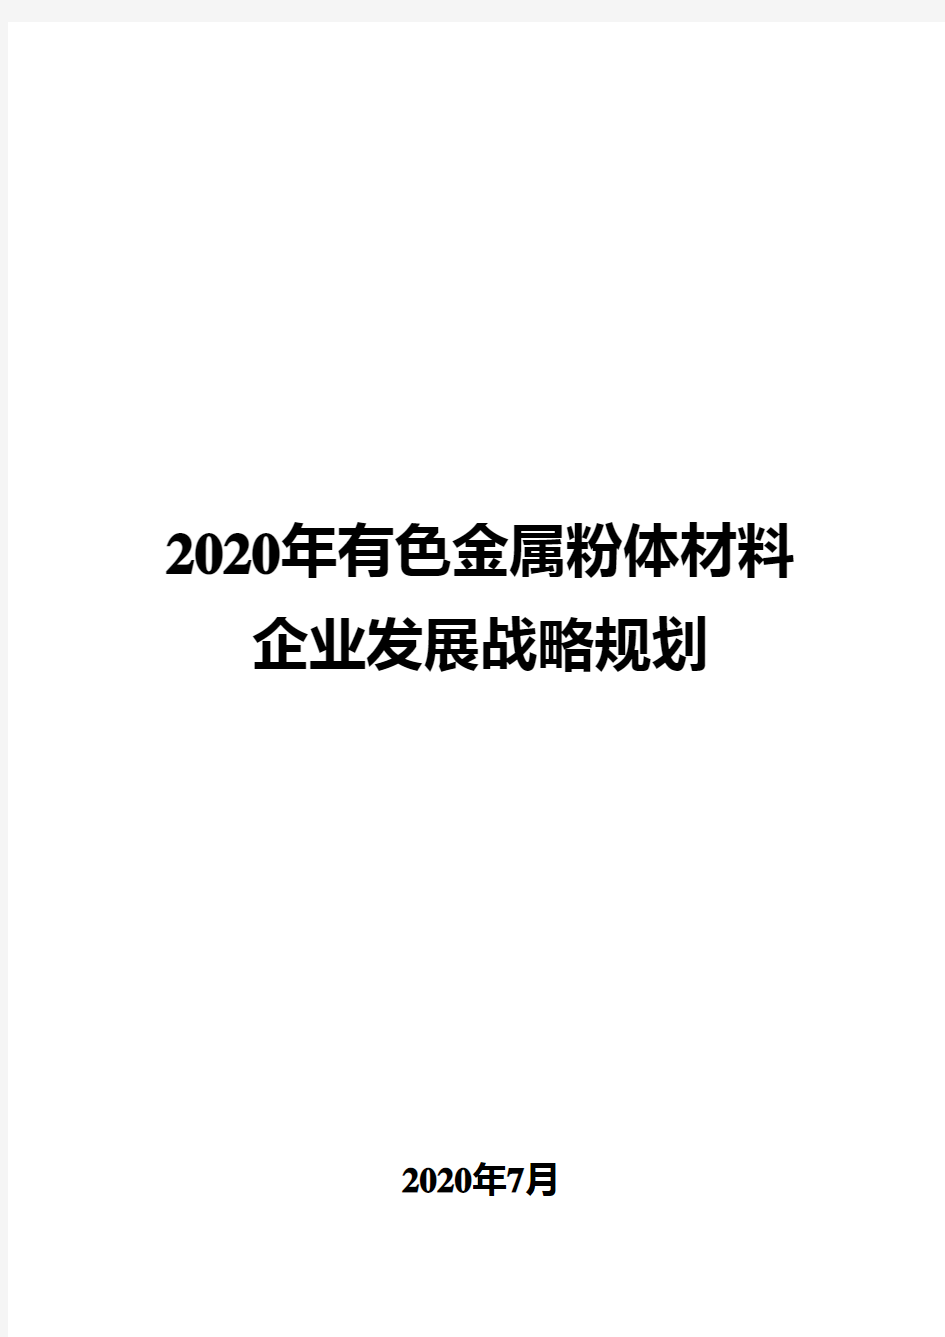 2020年有色金属粉体材料企业发展战略规划